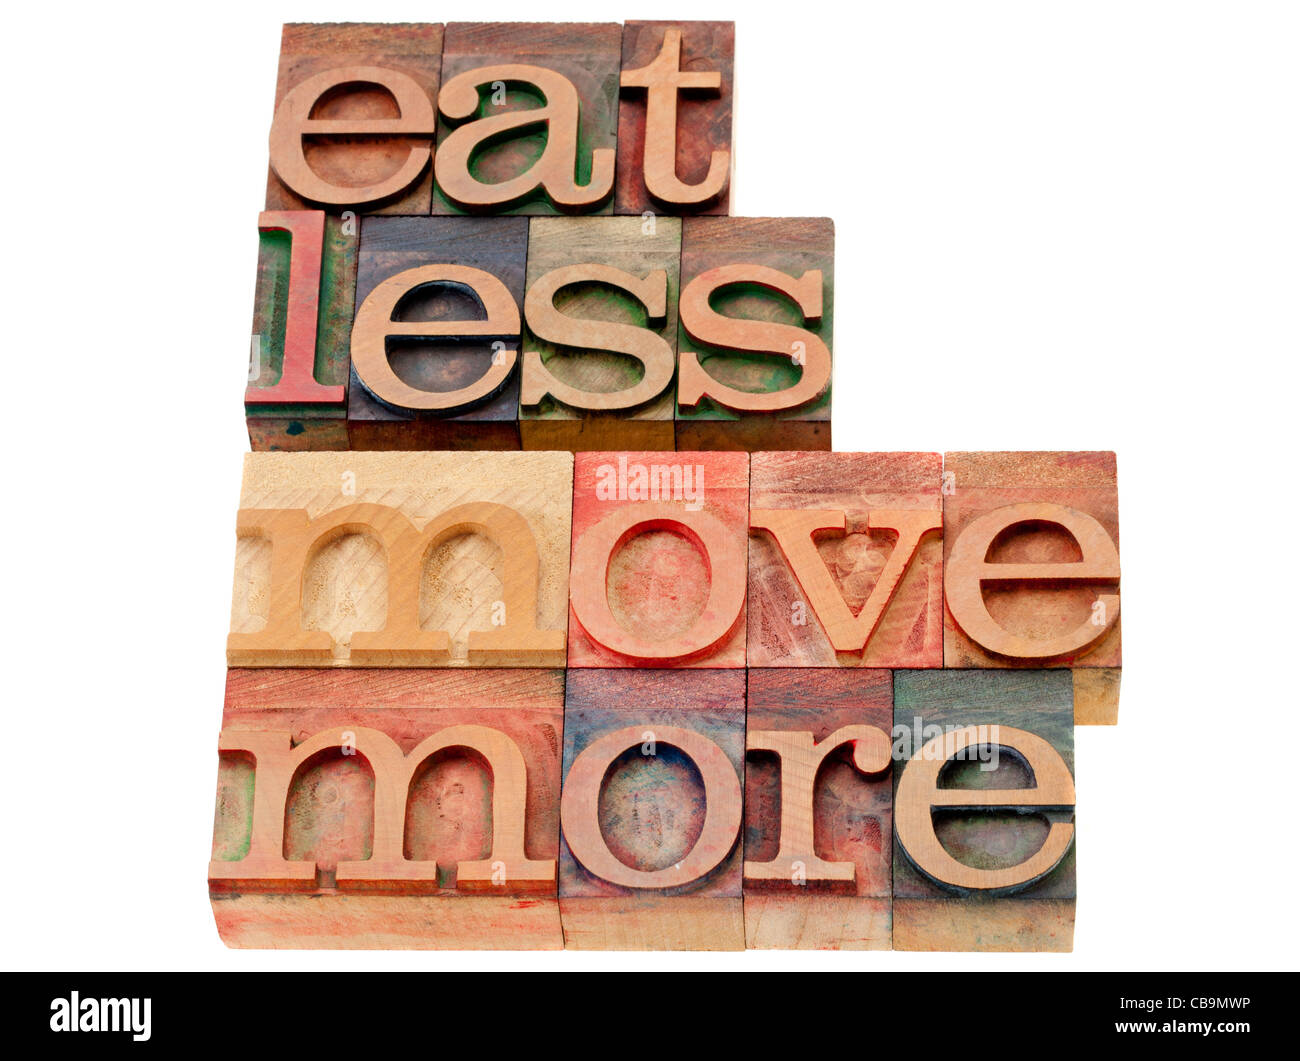 Mangiare meno, più movimento - parole di saggezza per una vita sana - testo isolato in legno vintage tipografia blocchi Foto Stock